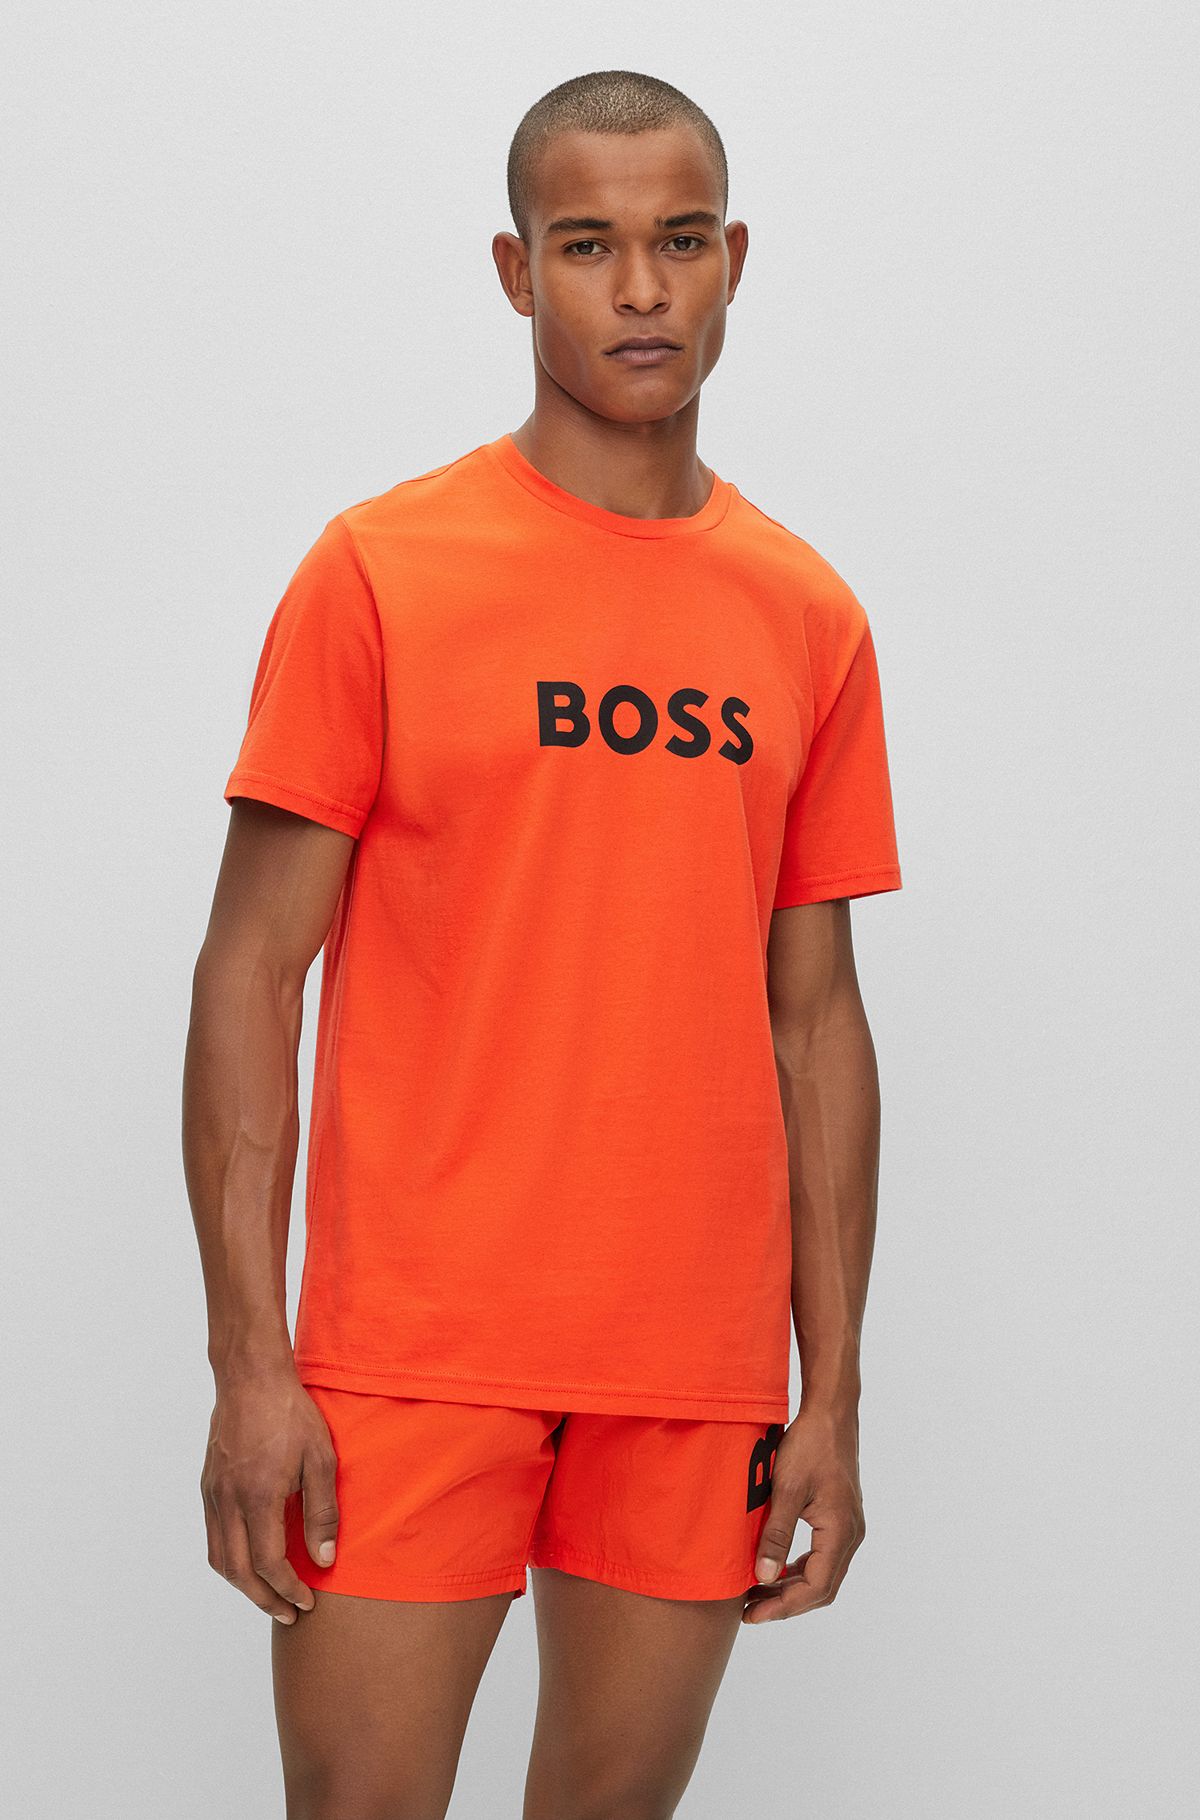 BOSS in Orange by HUGO BOSS | Men